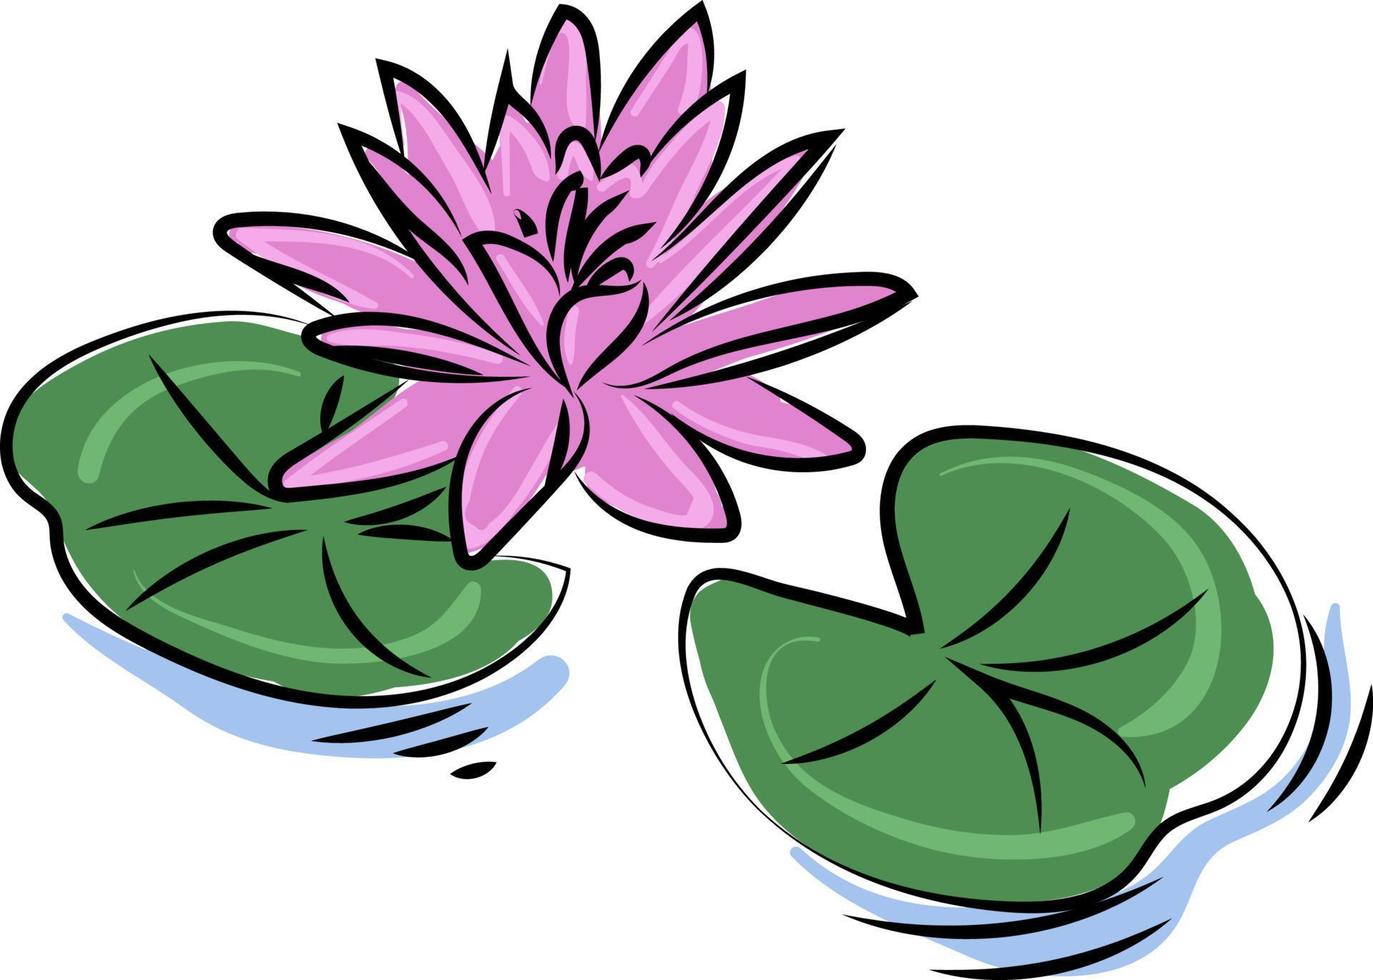 fleur de lotus pourpre, illustration, vecteur sur fond blanc.